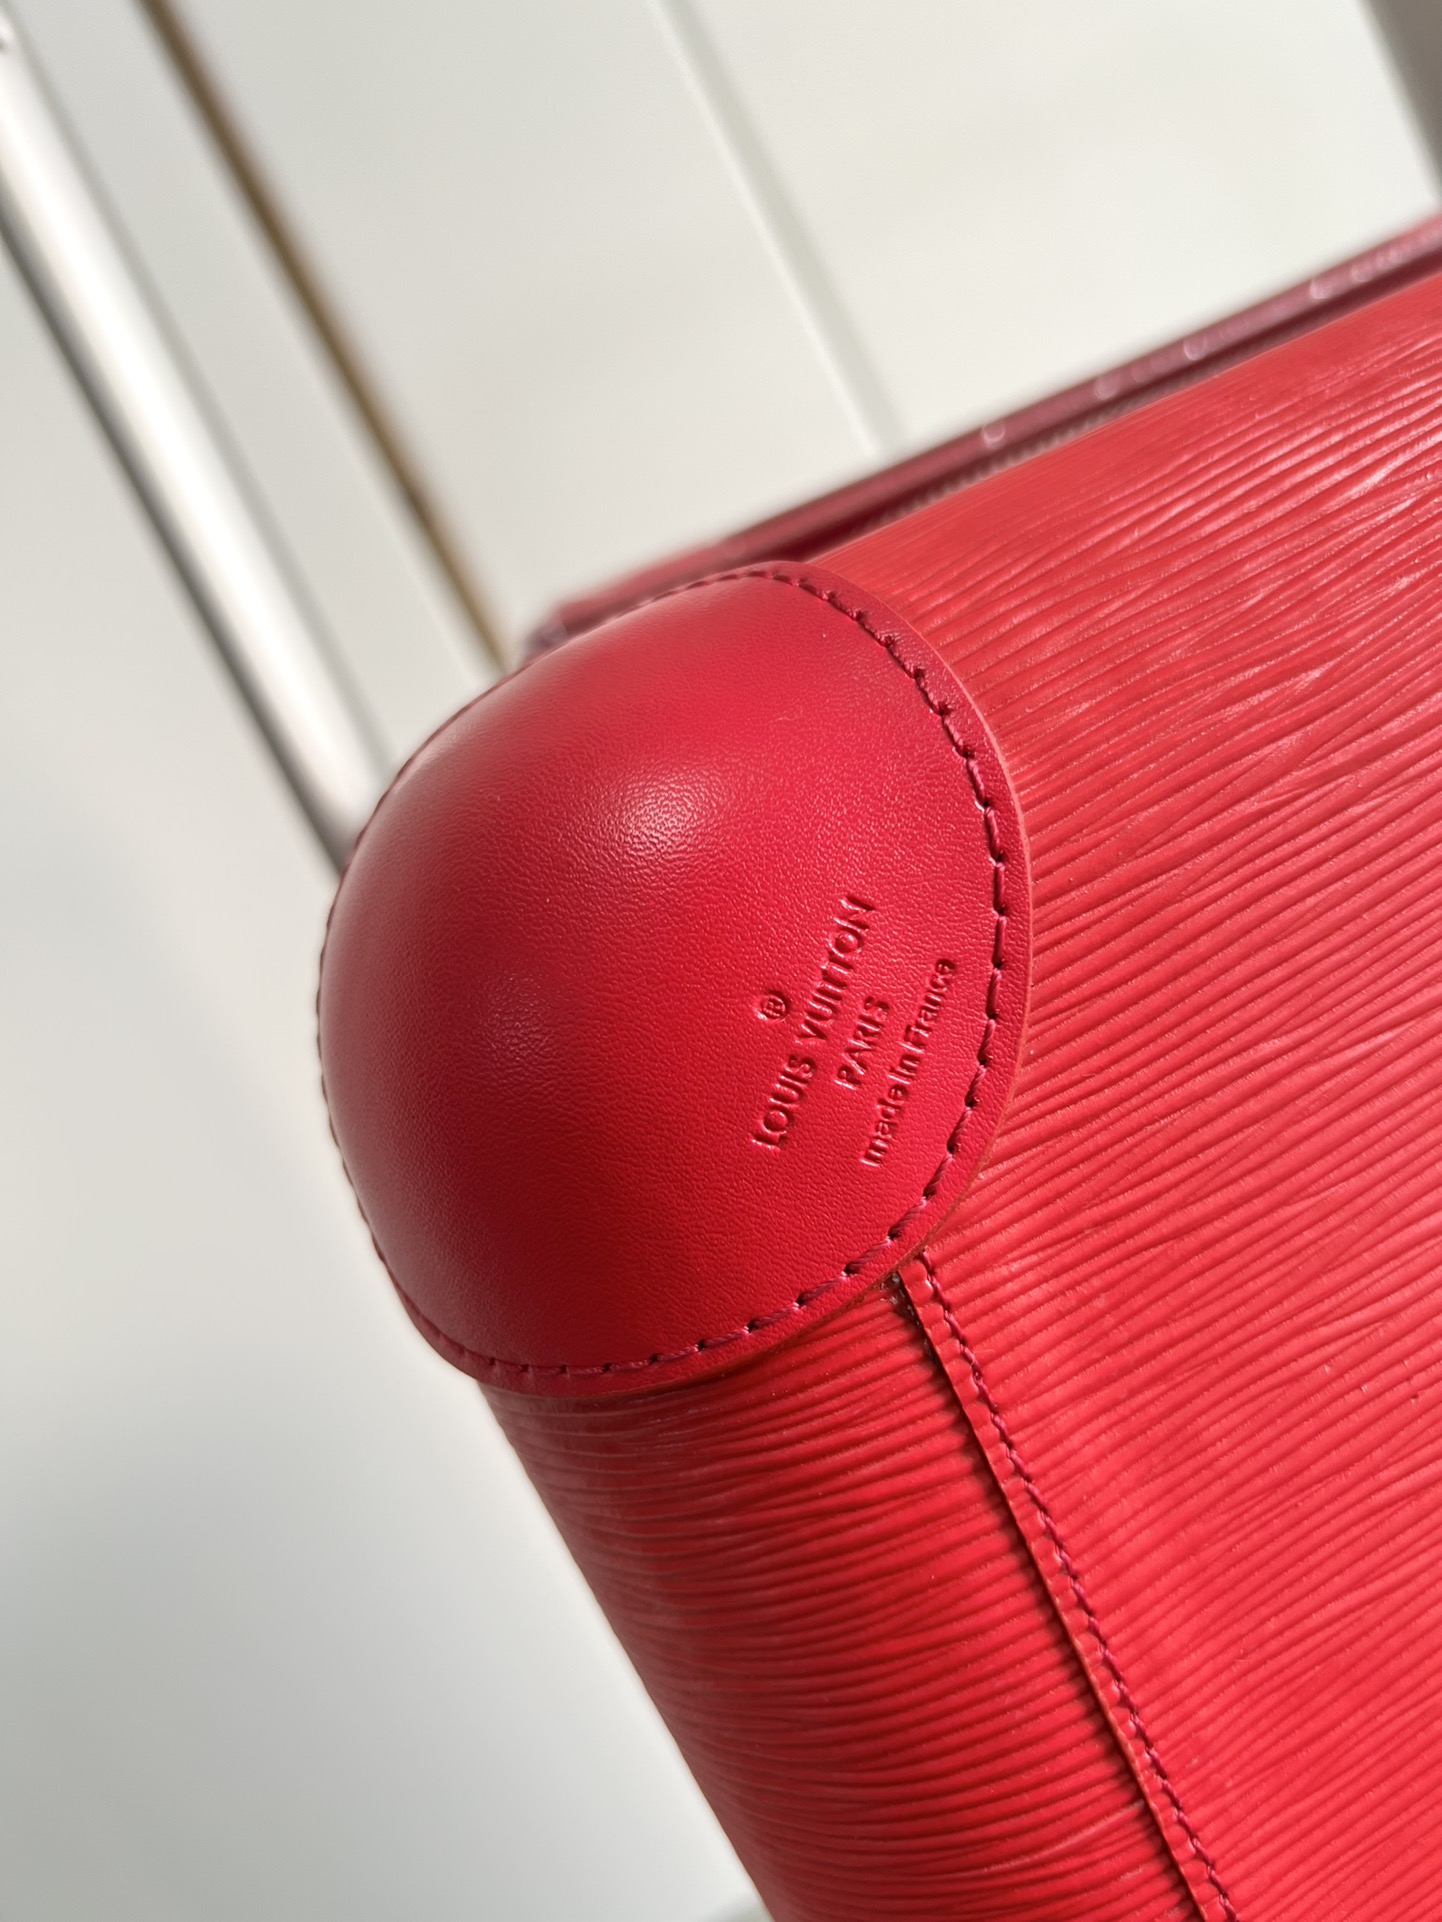 Louis Vuitton M23227 Horizon 55 Epi Leather Red